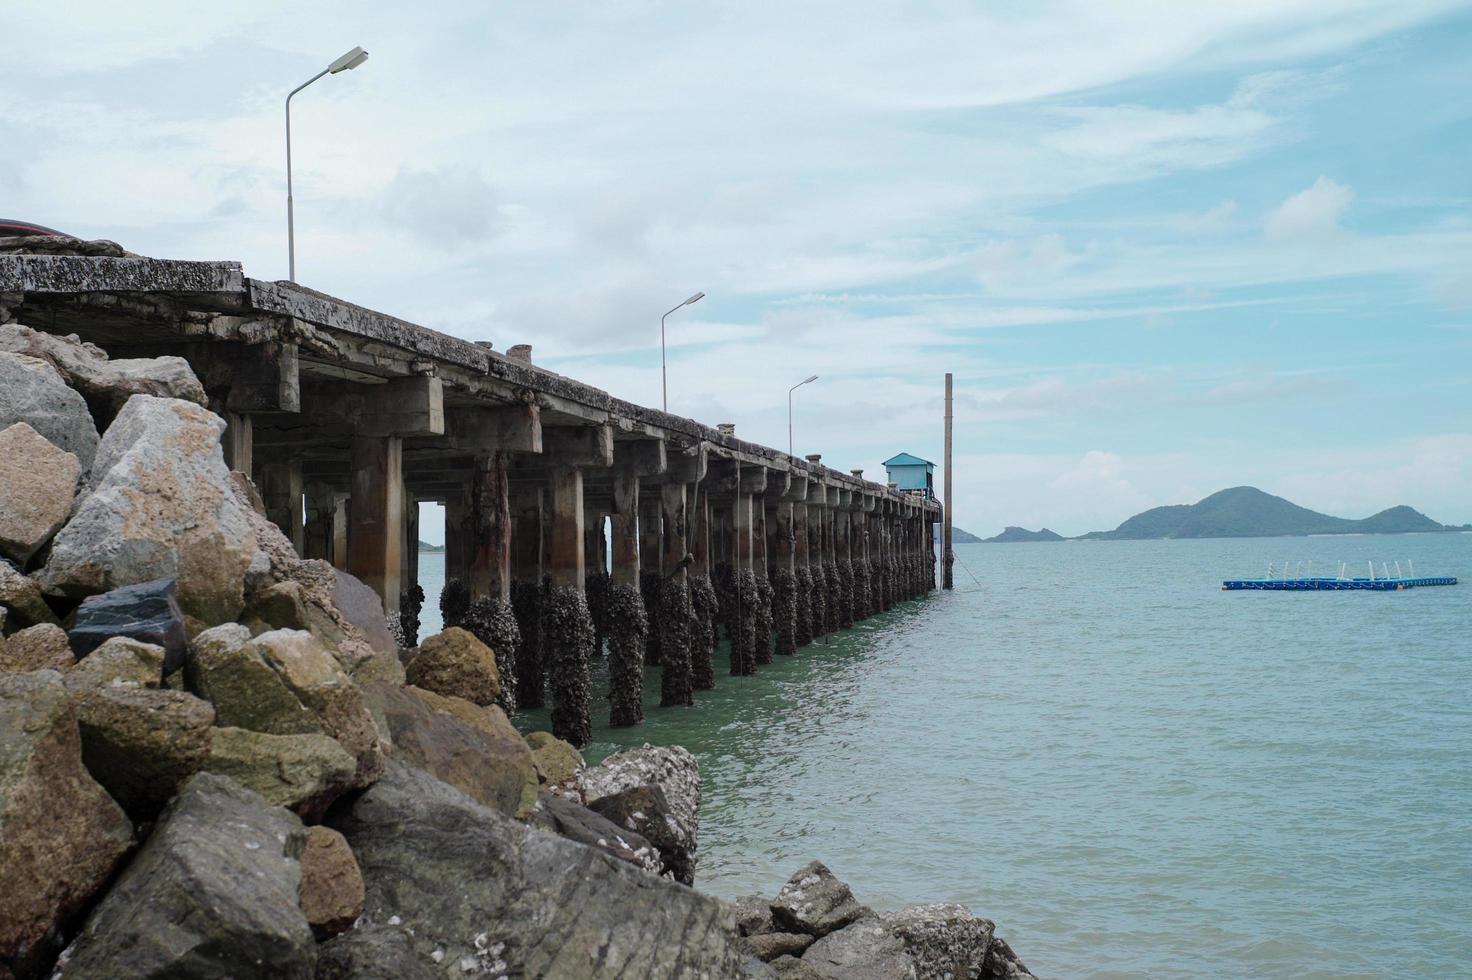 estrada de concreto para o mar com a paisagem e a ilha no fundo. paisagem marinha e a estrutura do porto no mar. foto